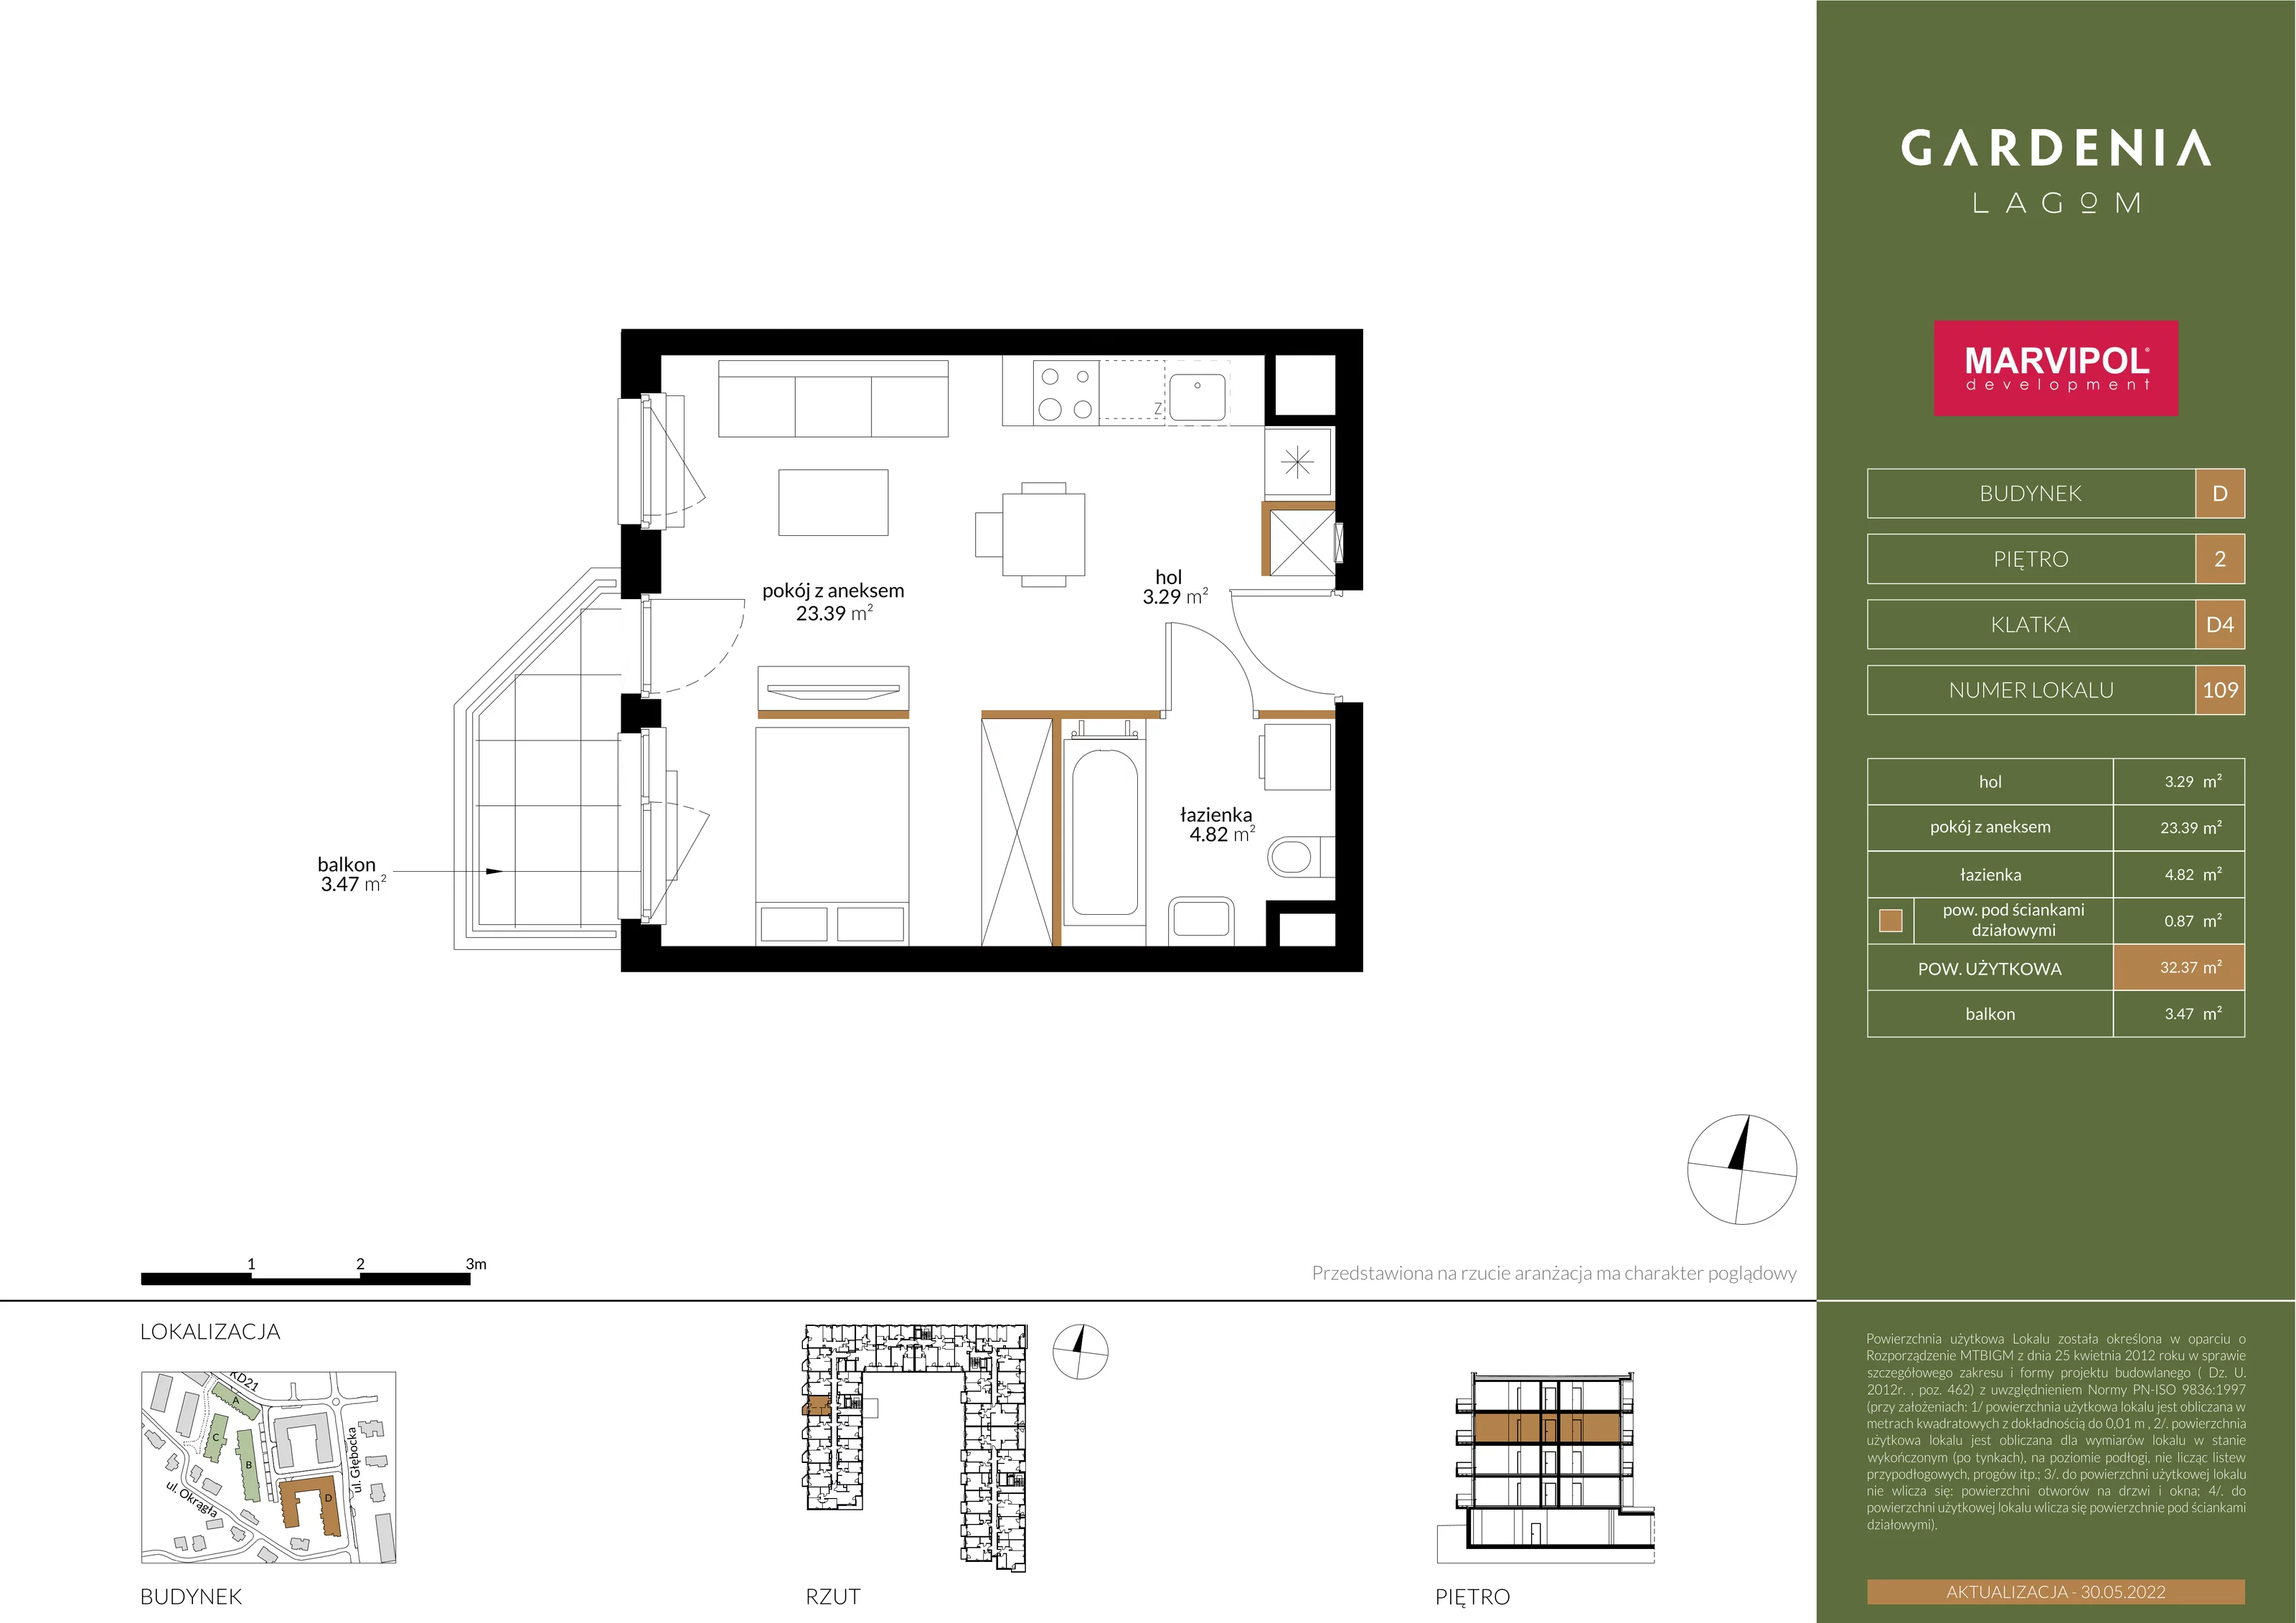 Apartament 32,37 m², piętro 2, oferta nr D109, Gardenia Lagom, Warszawa, Białołęka, Grodzisk, ul. Głębocka 117